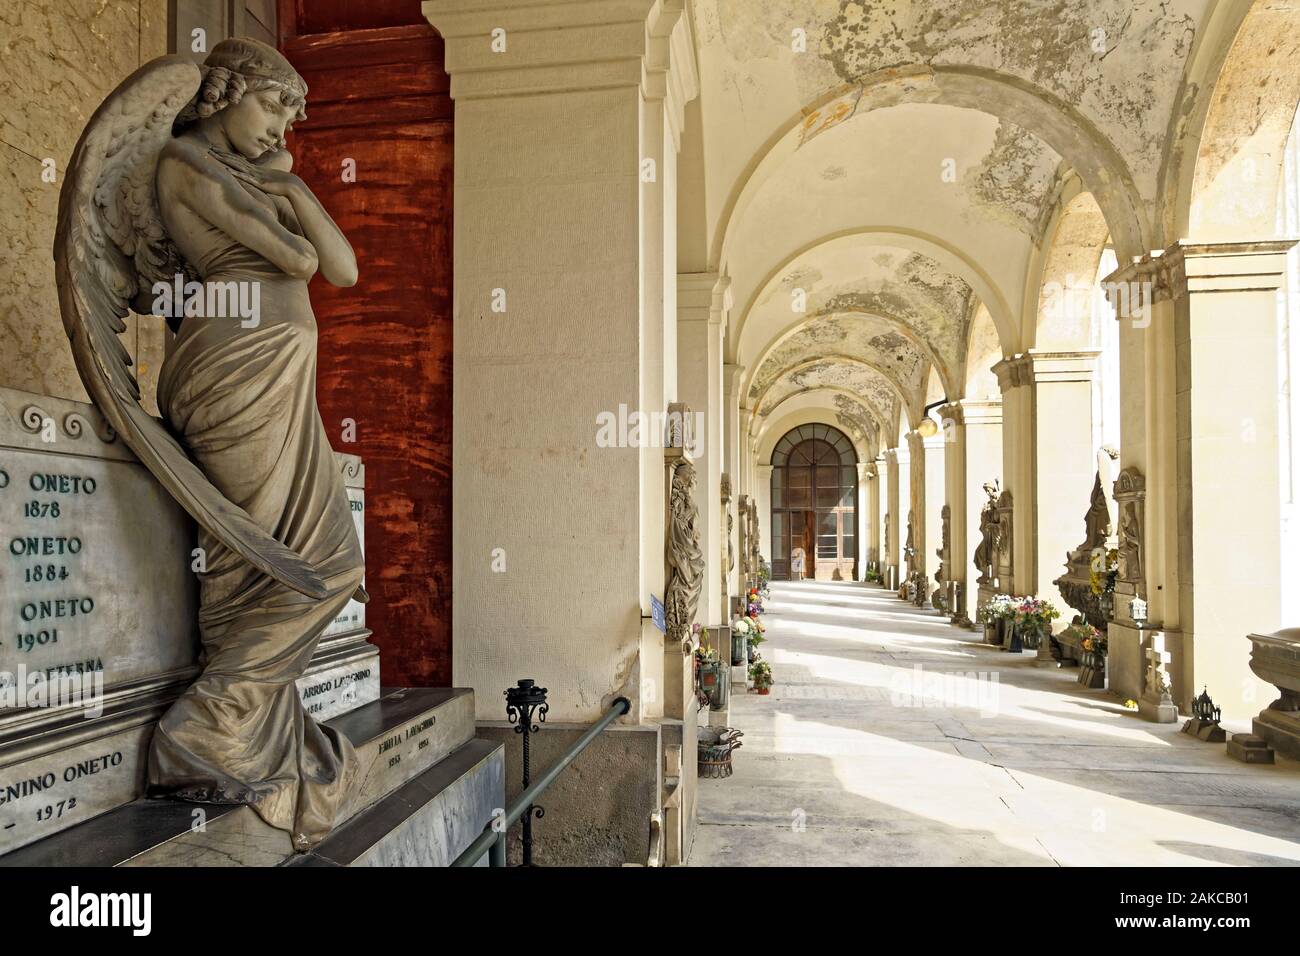 Hemis : Italie ligurie genes cimetiere monumental staglieno ange